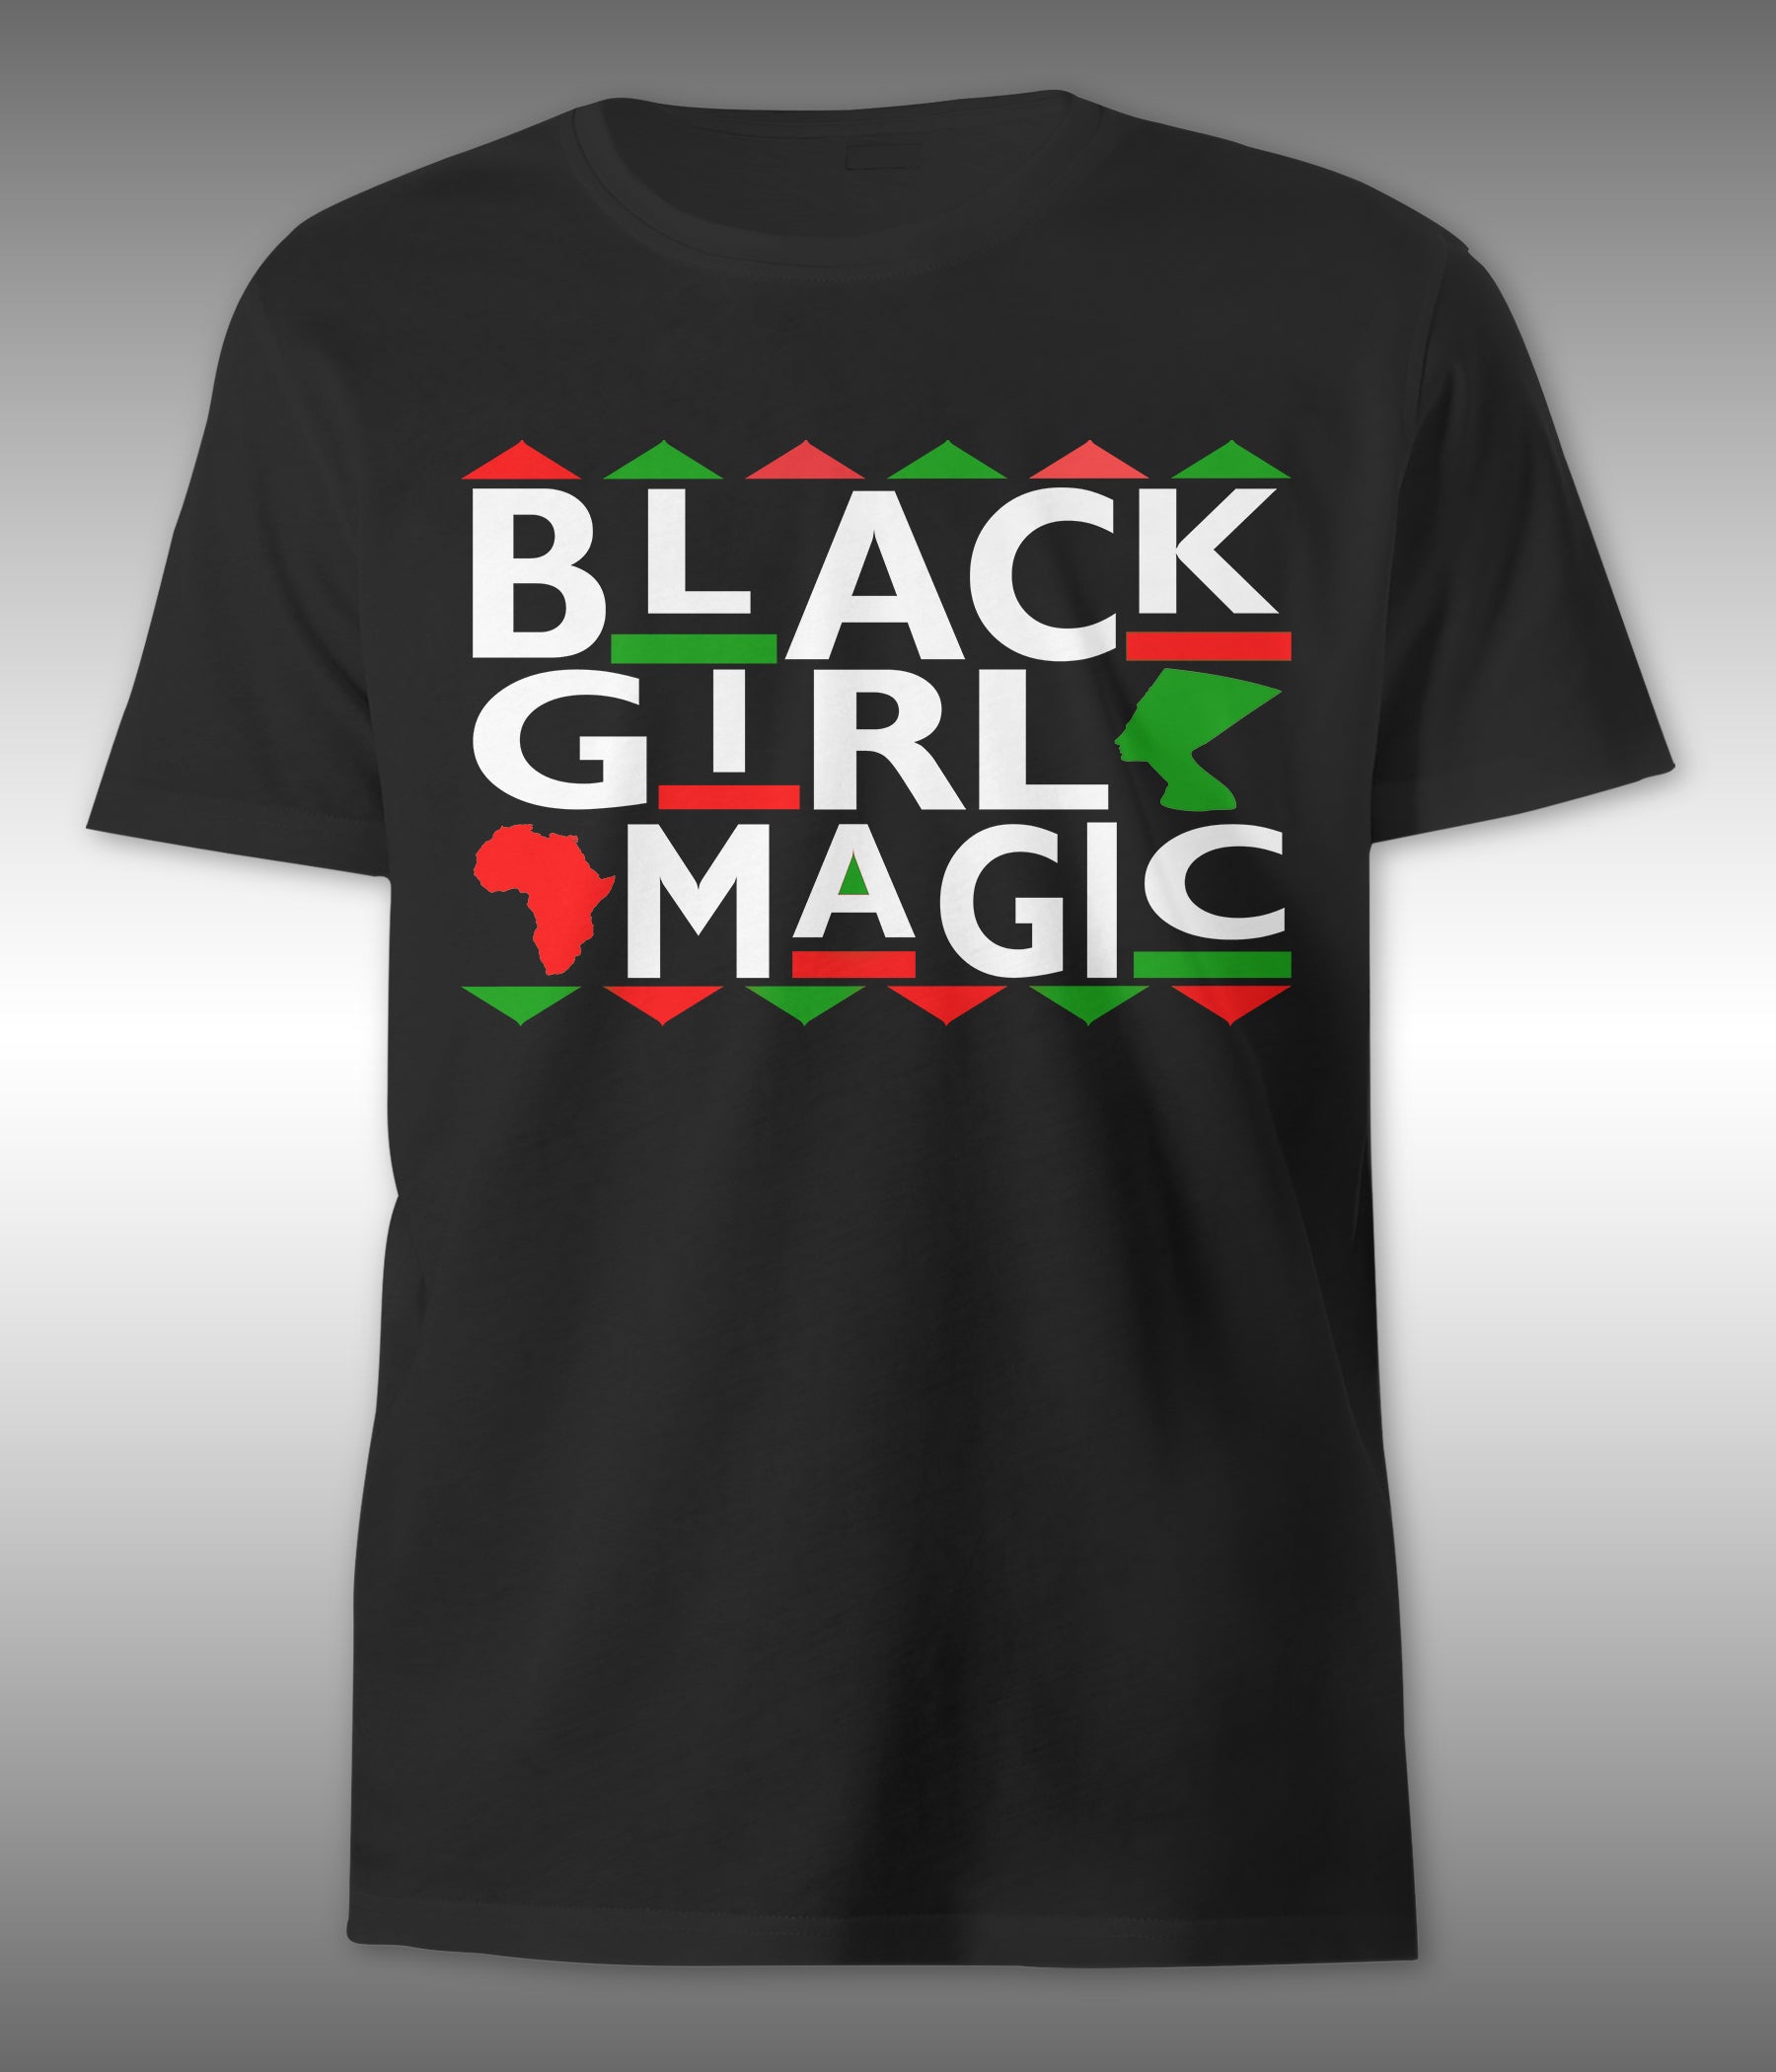 “Black Girl Magic” Tee